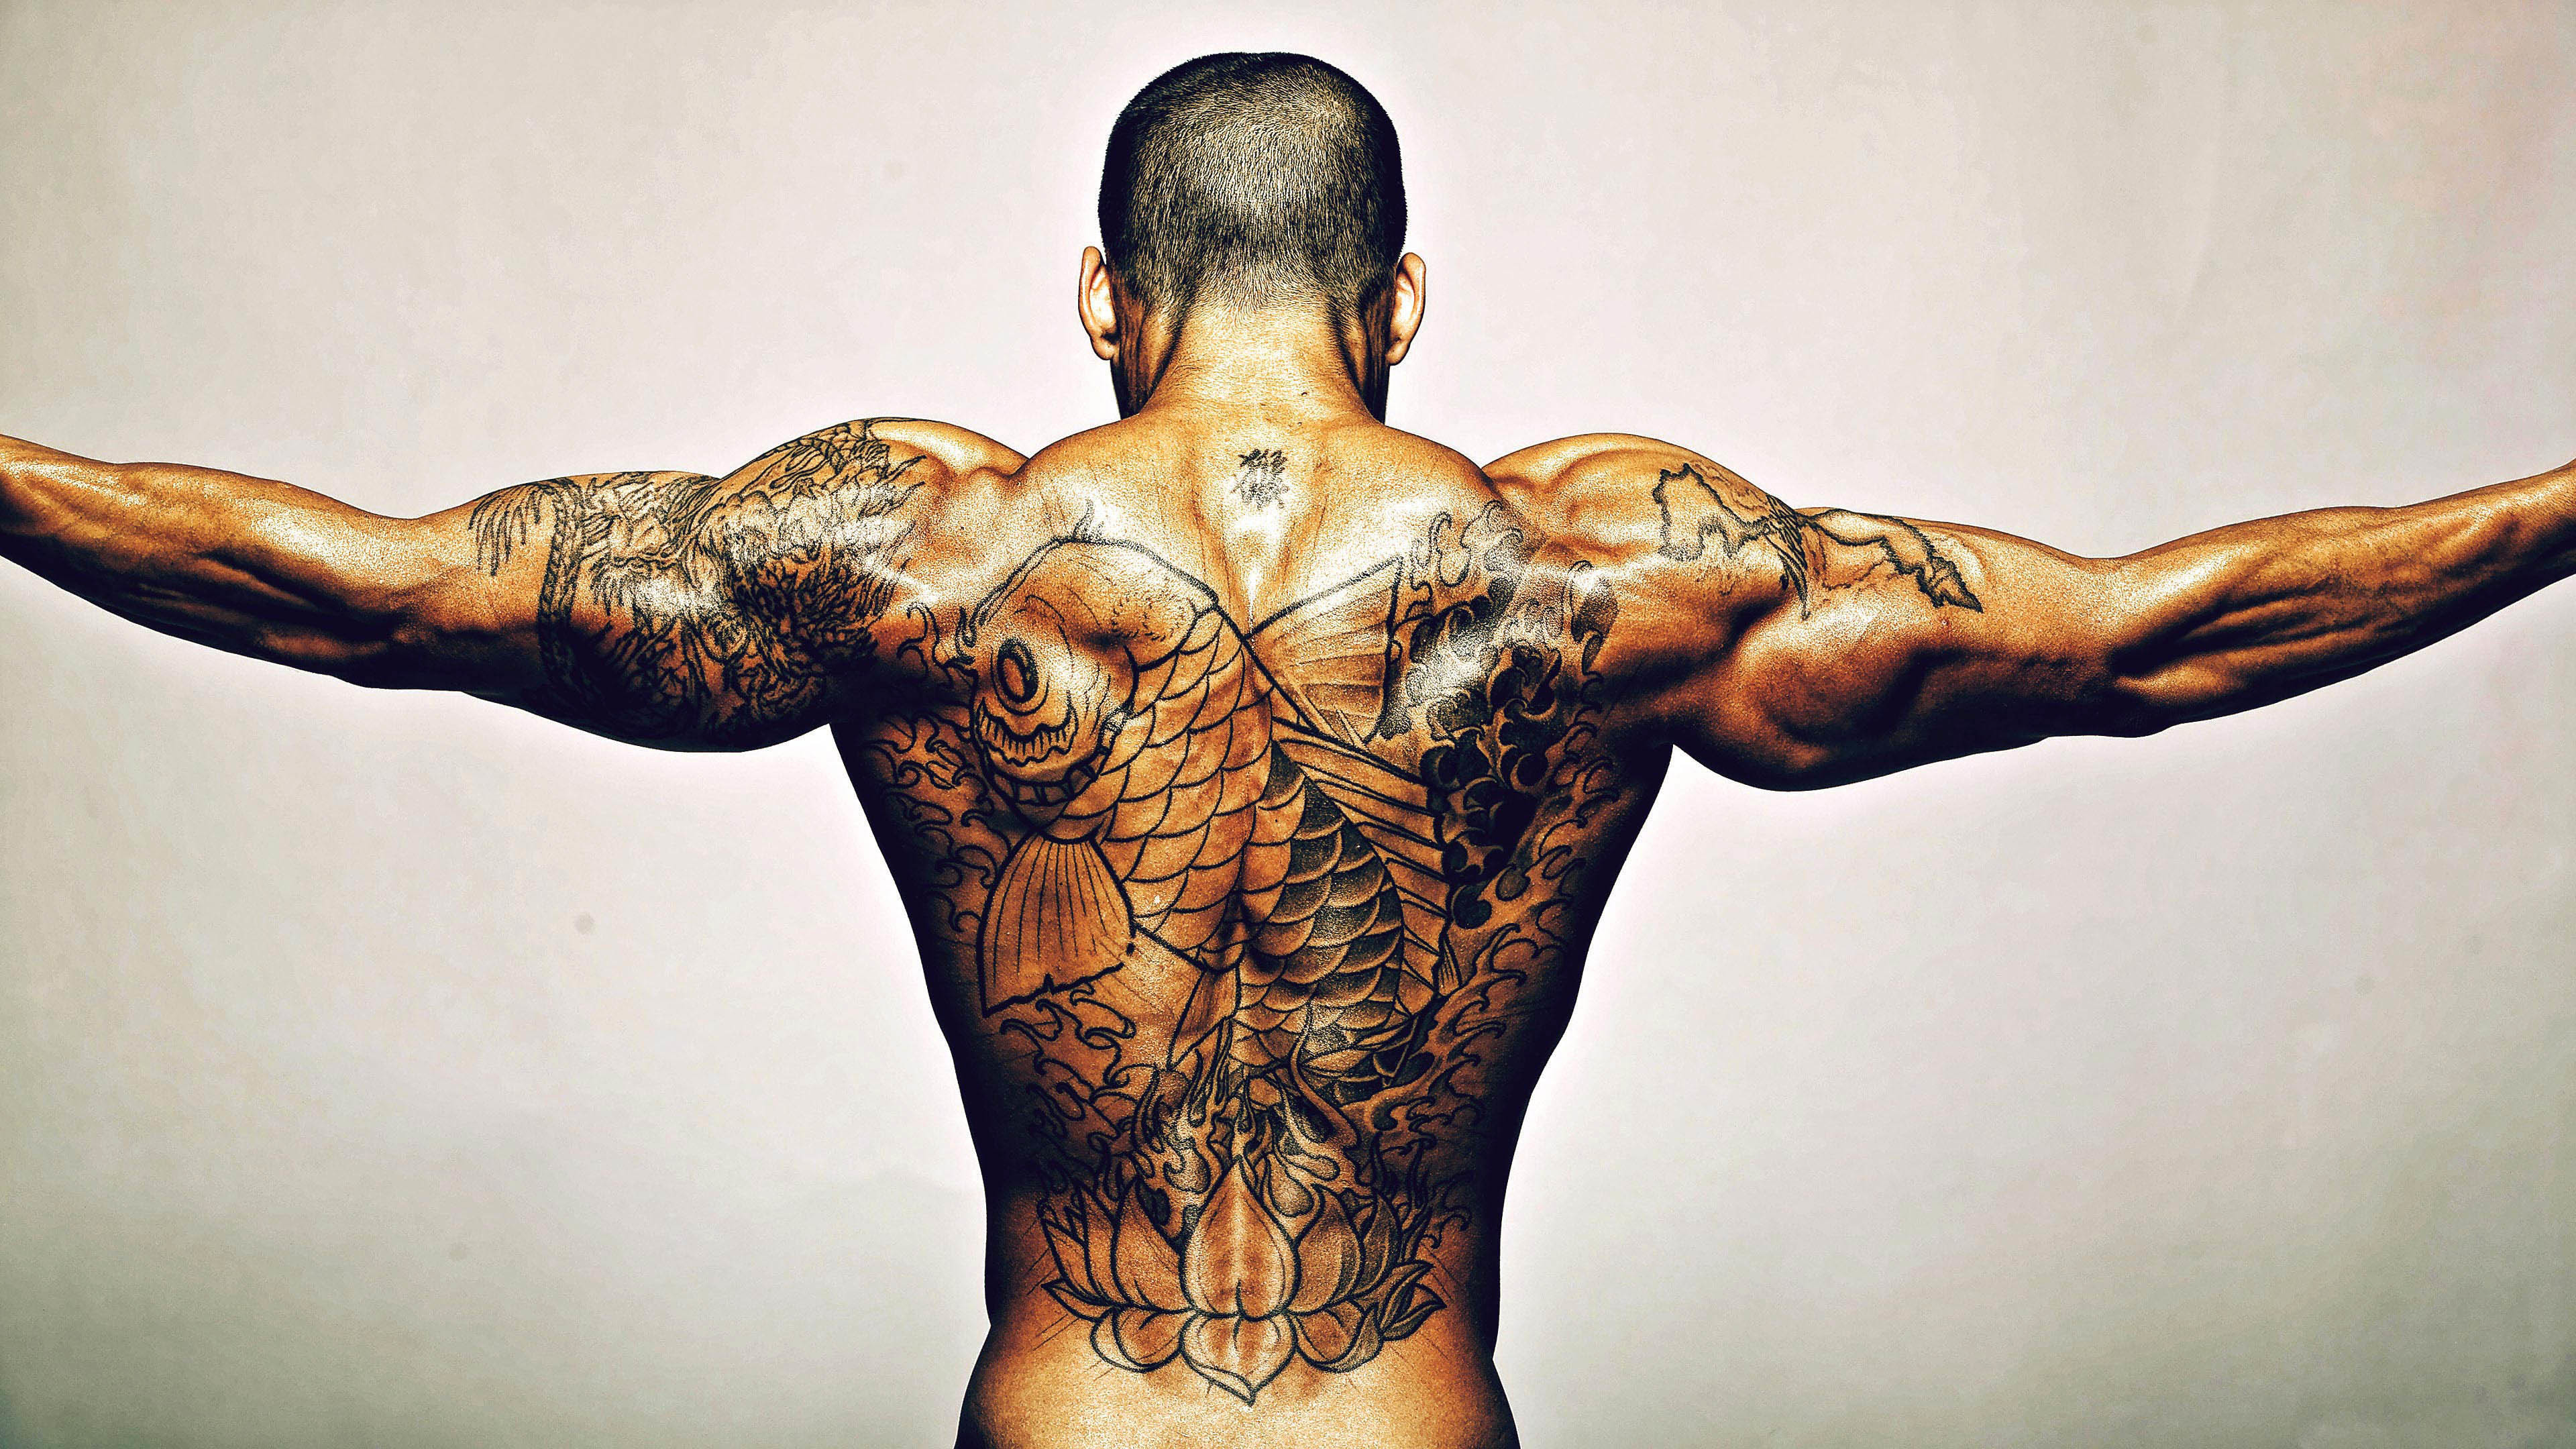 3840x2160 Tattoos, Man, Bodybuilder, 4K